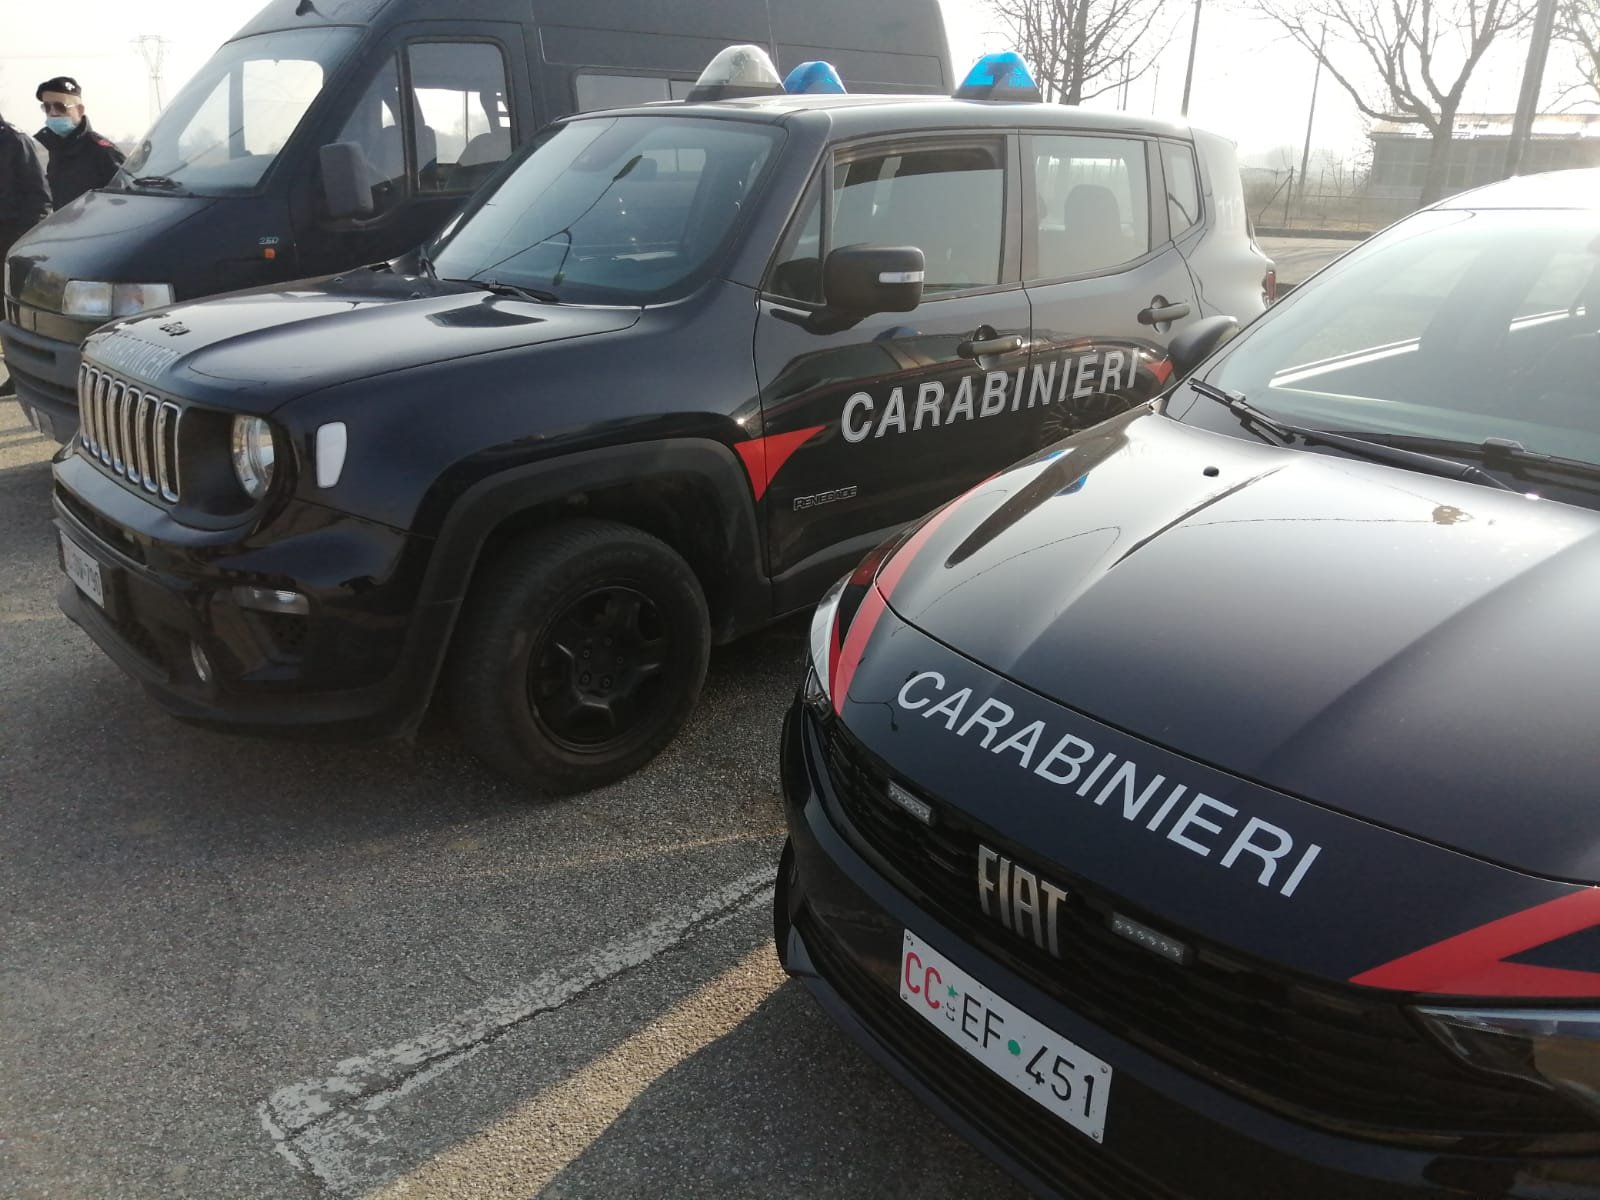 Operazione Carabinieri Casale: in 5 nei guai per tentata estorsione e danneggiamento